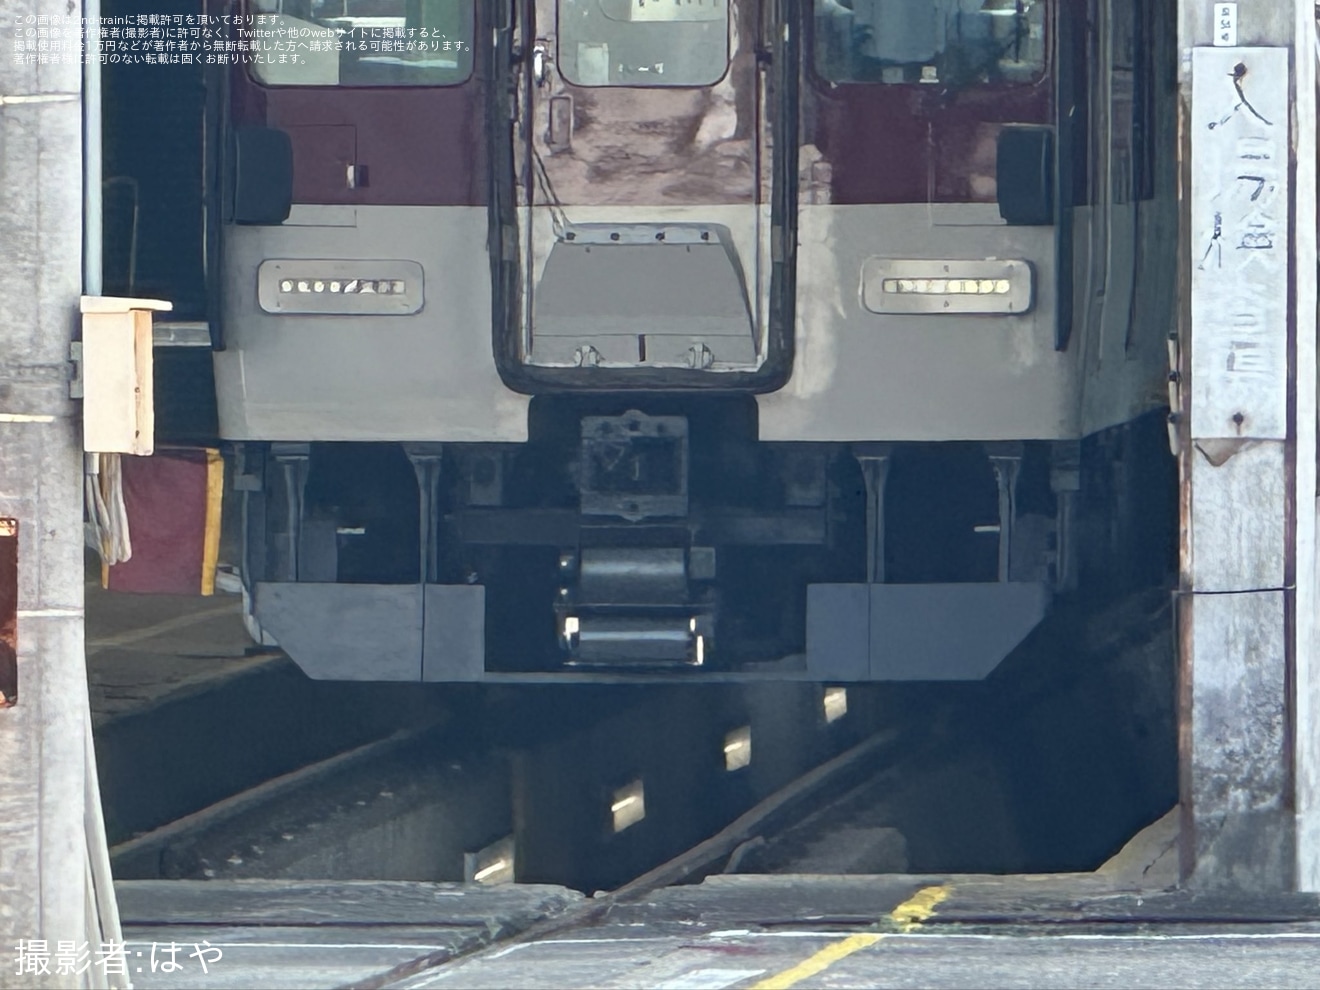 【近鉄】1233系VE37がワンマン運転対応と思われる仕様に工事中の拡大写真